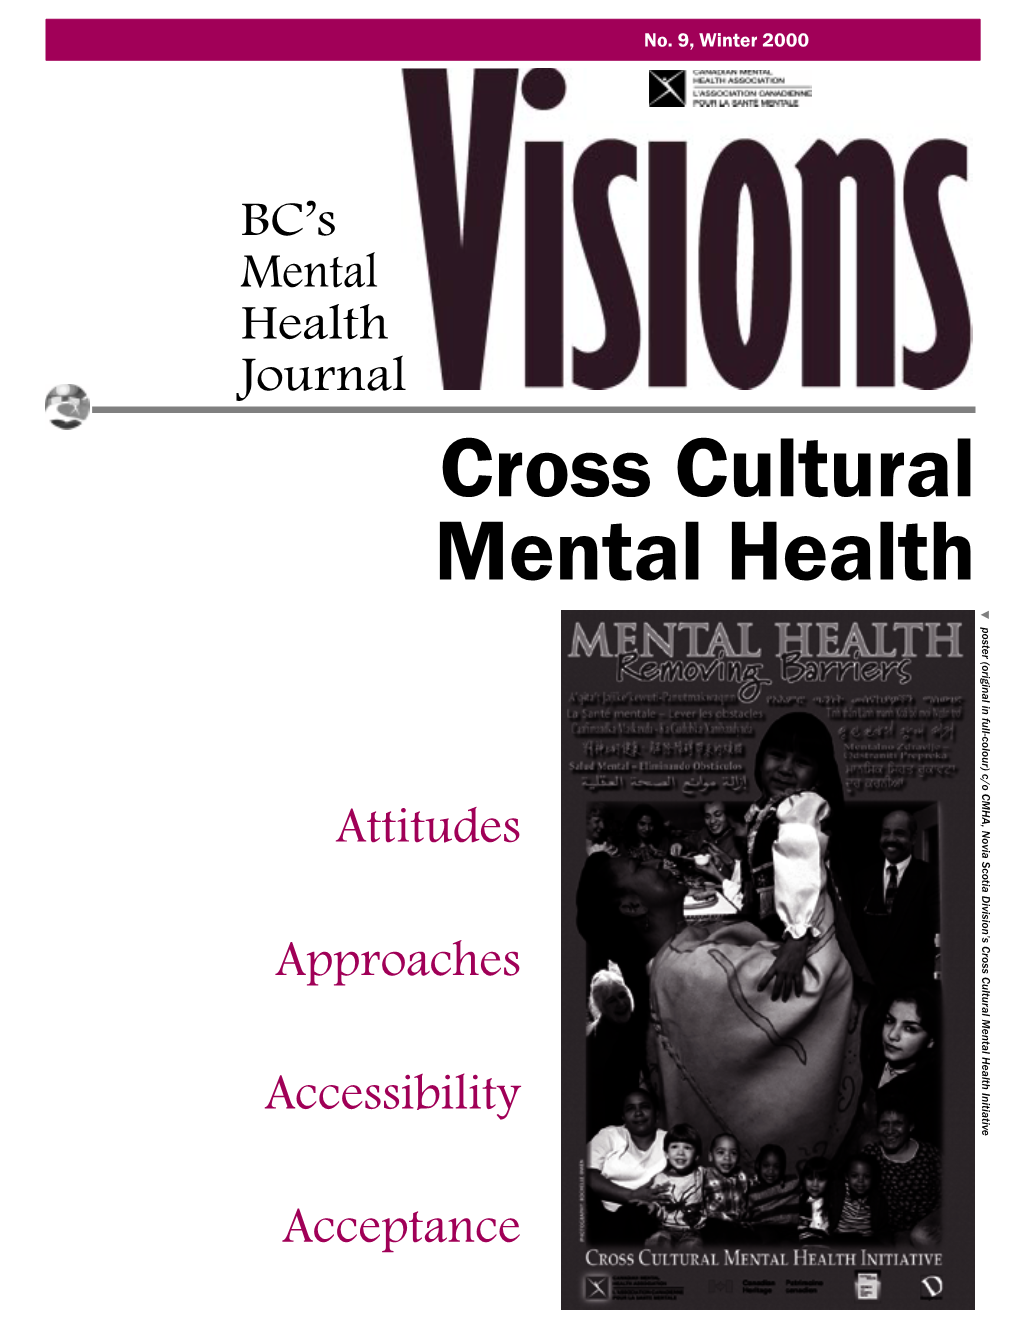 Cross Cultural Mental Health